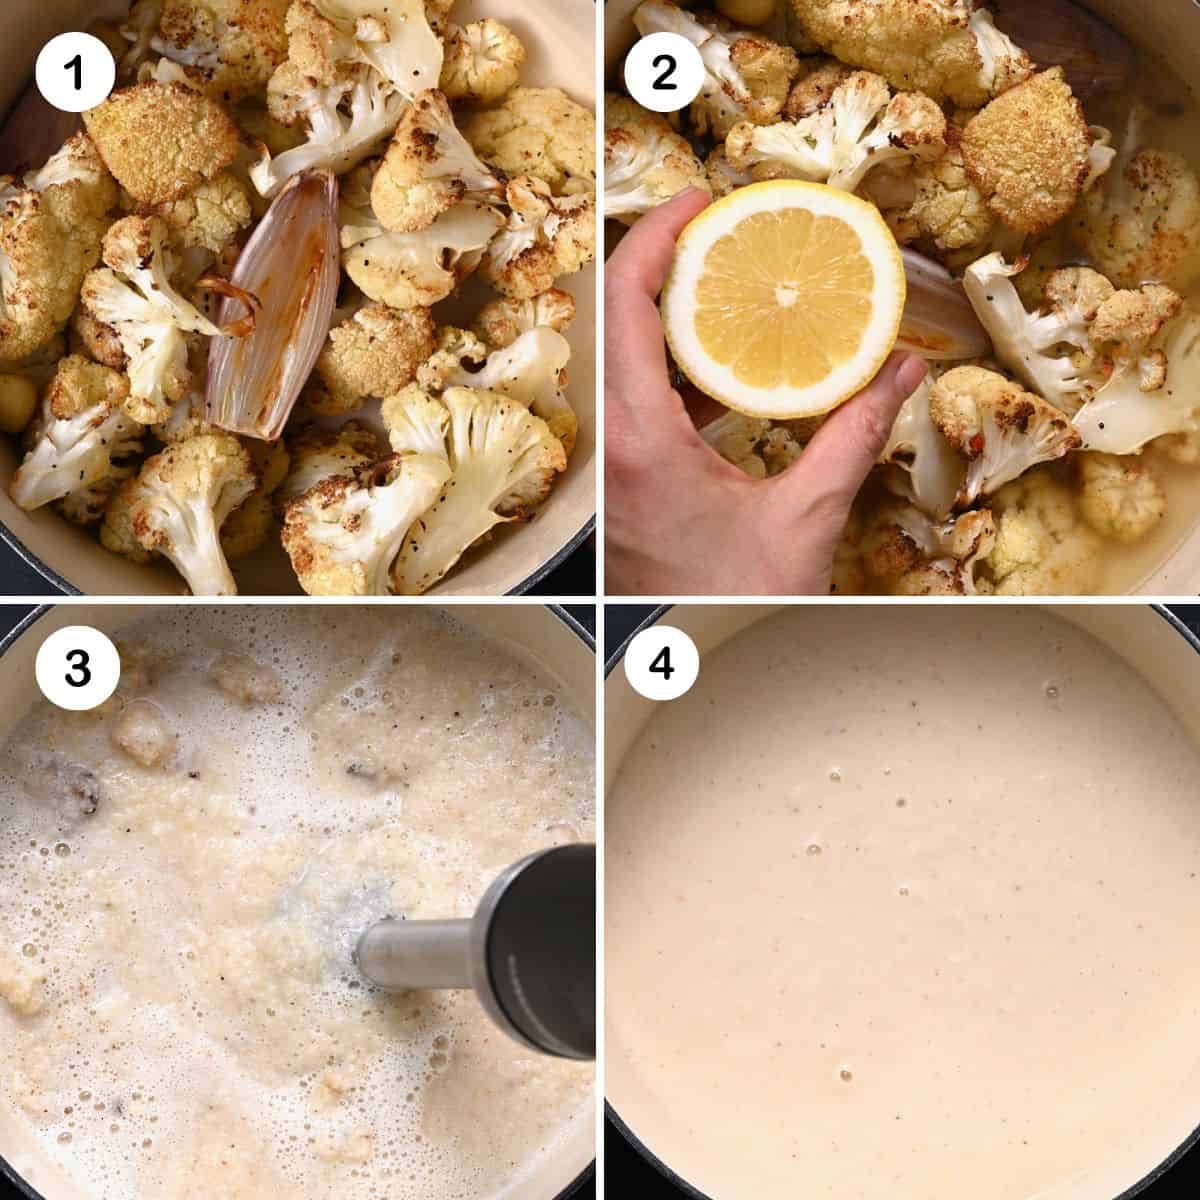 Steps for blending cauliflower soup